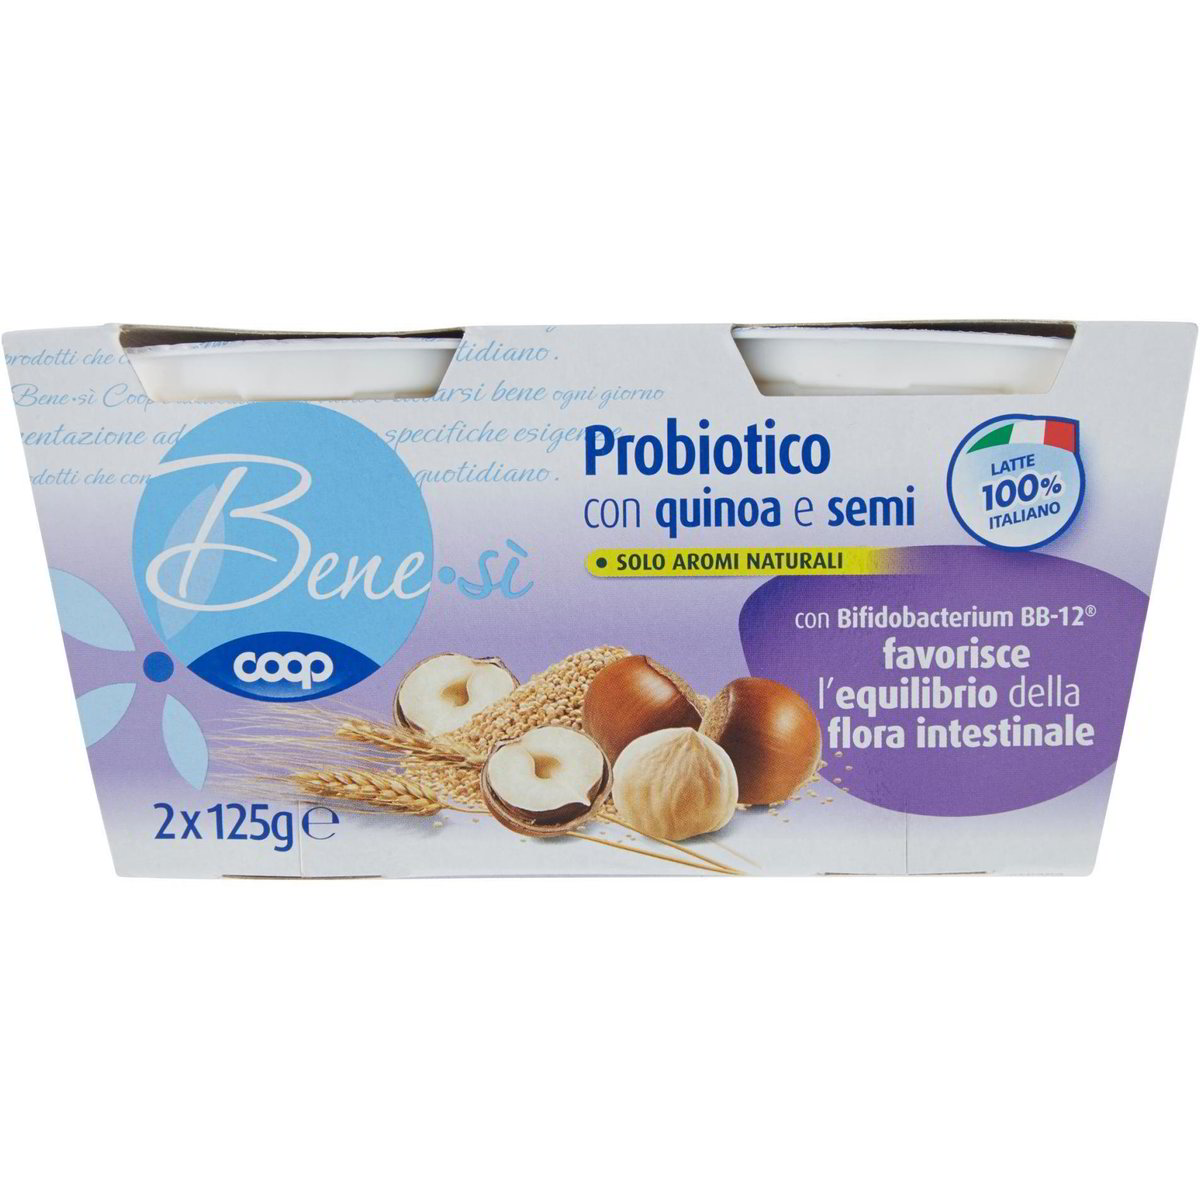 Yogurt probiotico con quinoa e semi COOP - BENE SI' 2 X 125 G - Coop Shop